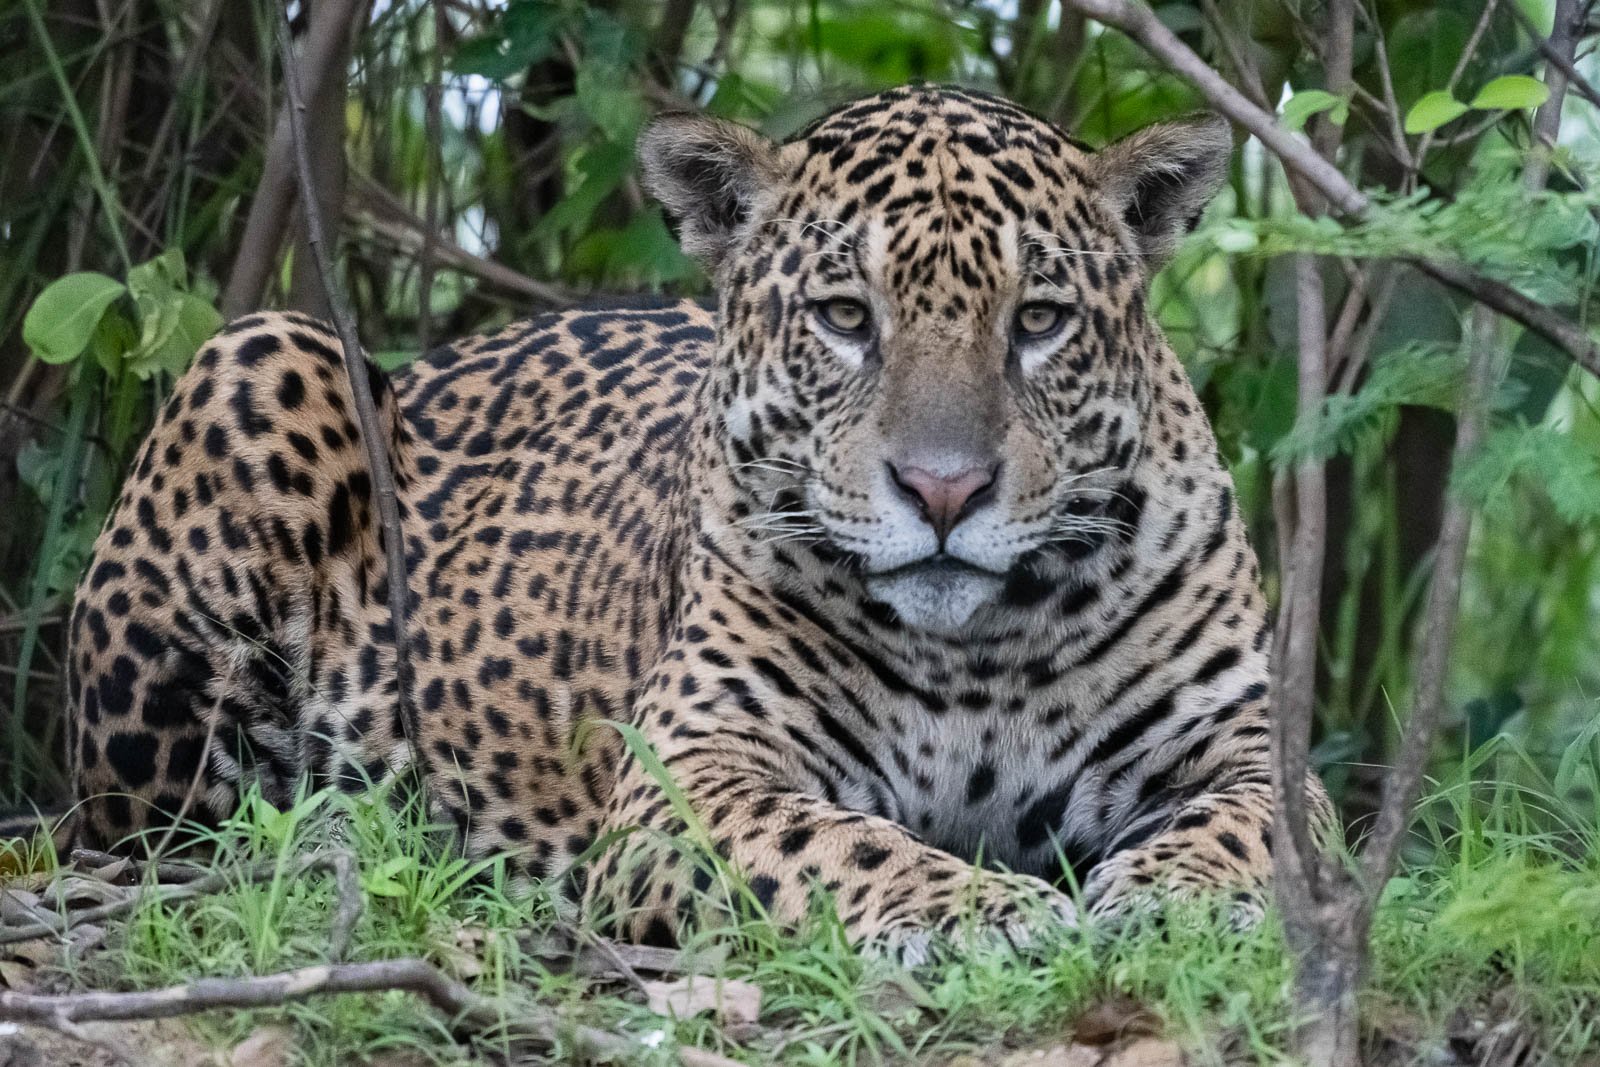 Vier Tage unserer Fotoreise haben wir im Reich der Jaguare verbracht und wir haben in diesen vier Tagen 12 majestätische Jaguare gesehen.